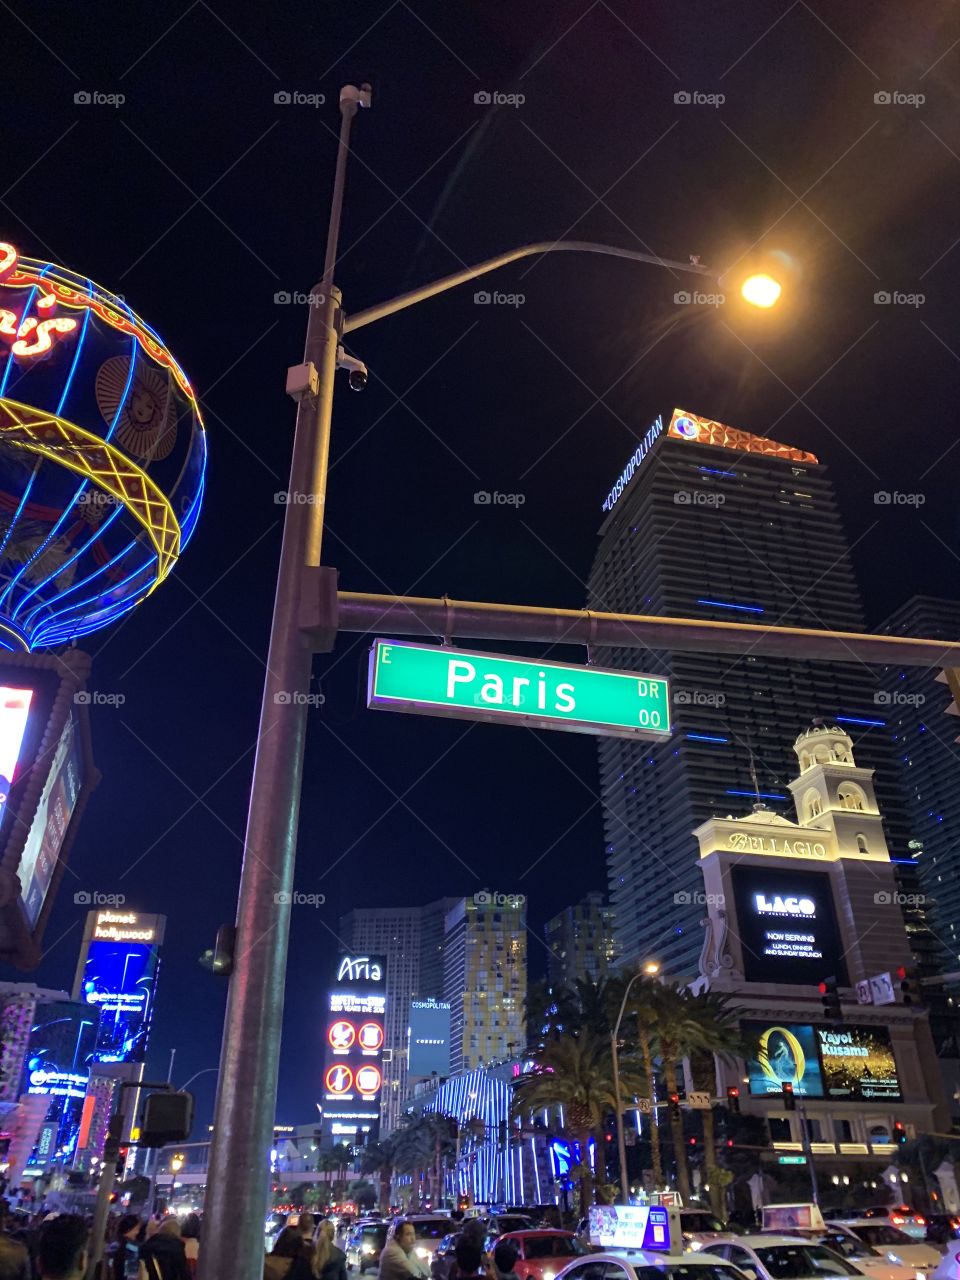 Paris ou Vegas? Es a questão 